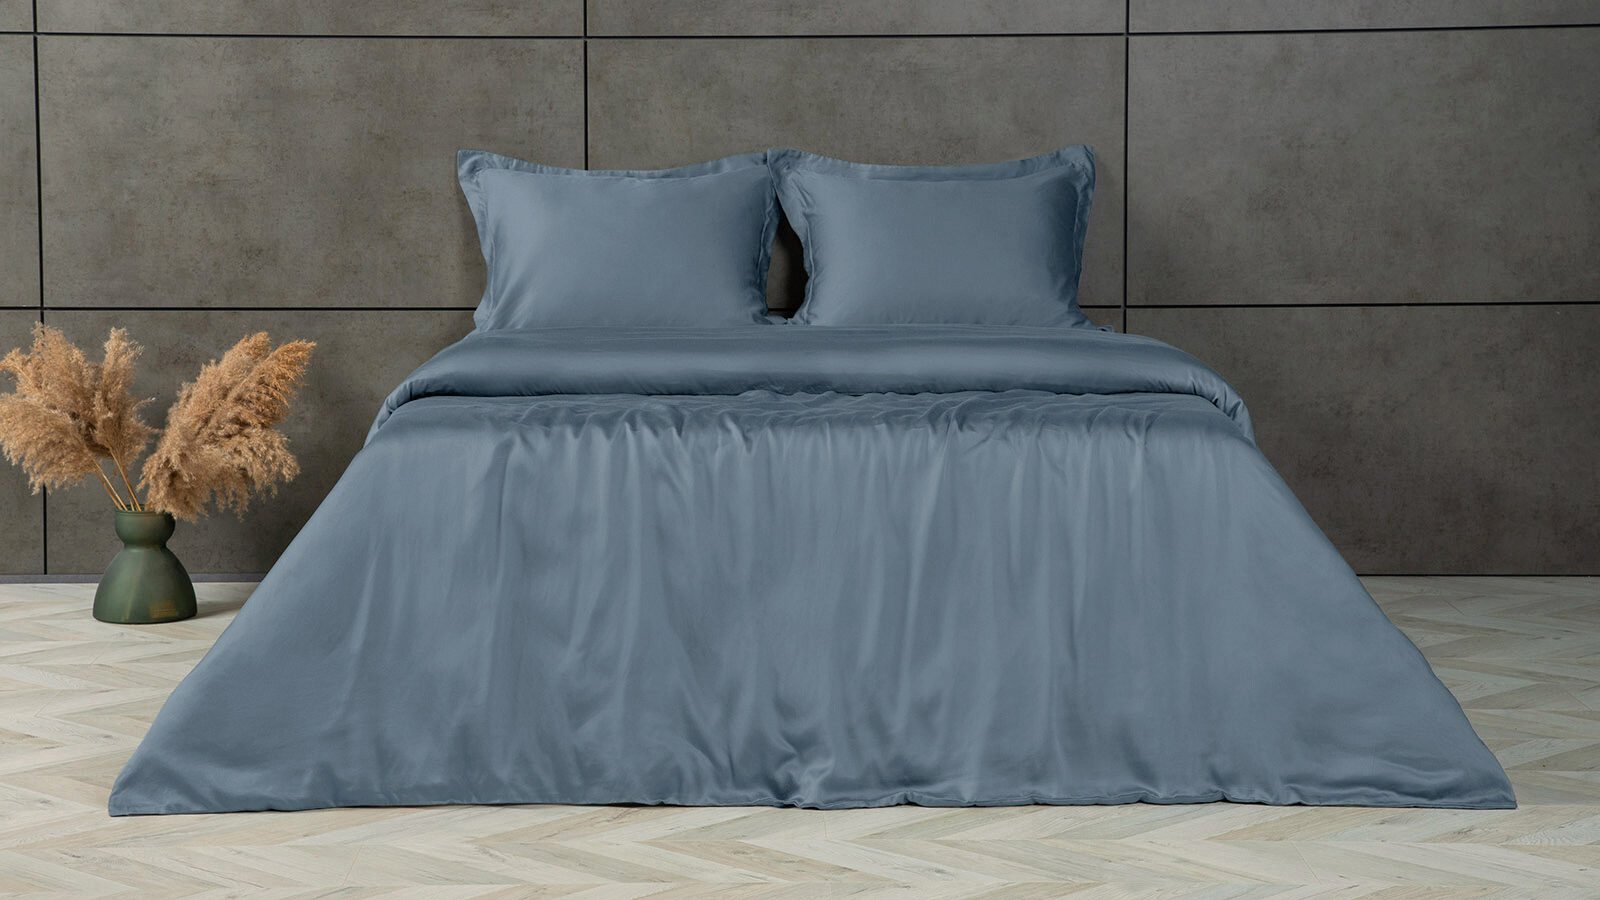 Комплект постельного белья Solid Tencel, цвет Синий металлик закон сохранения кота повесть синий фон